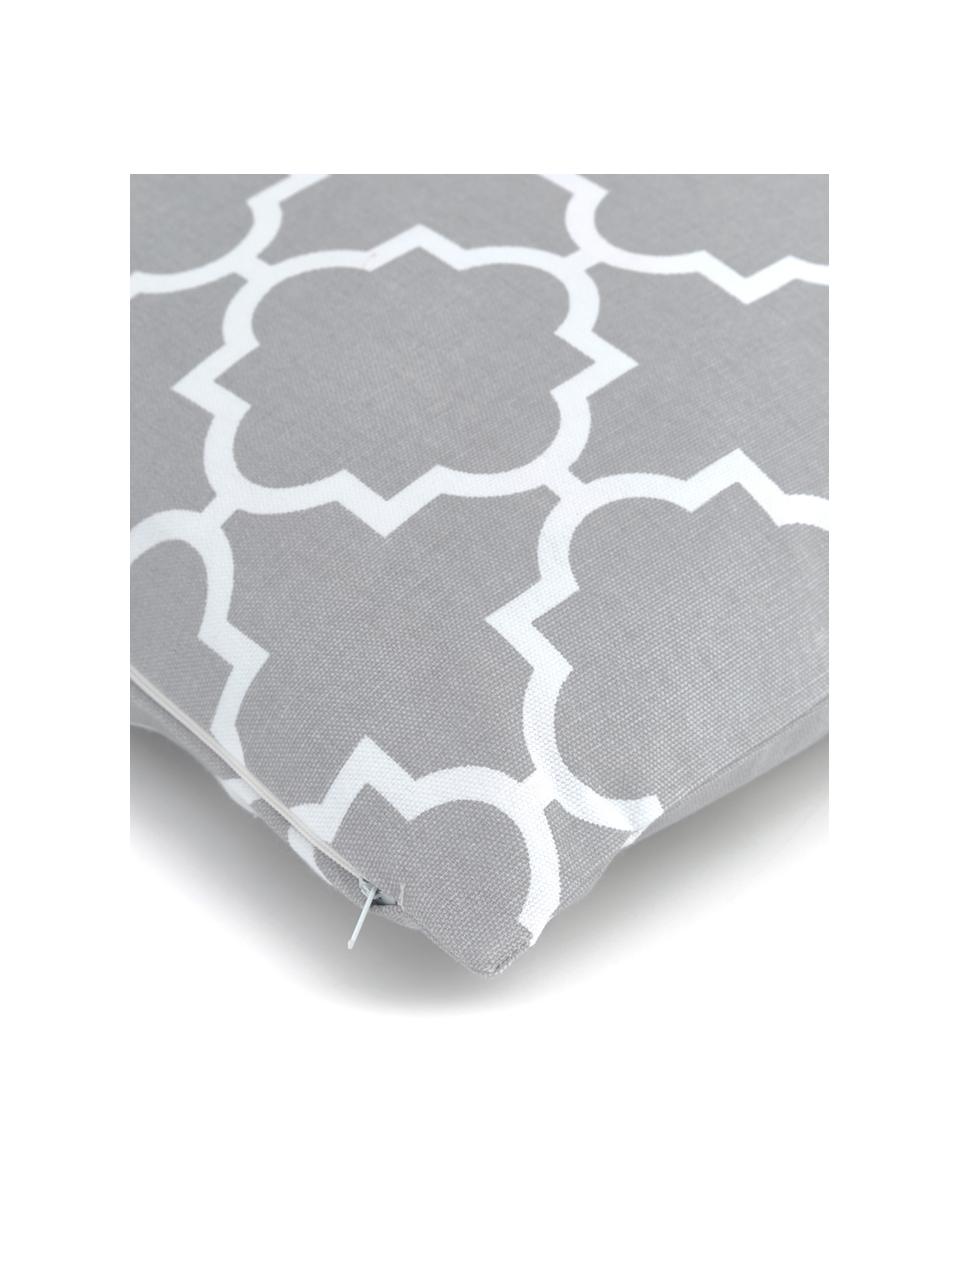 Kussenhoes Lana in grijs met grafisch patroon, 100% katoen, Grijs, B 45 x L 45 cm